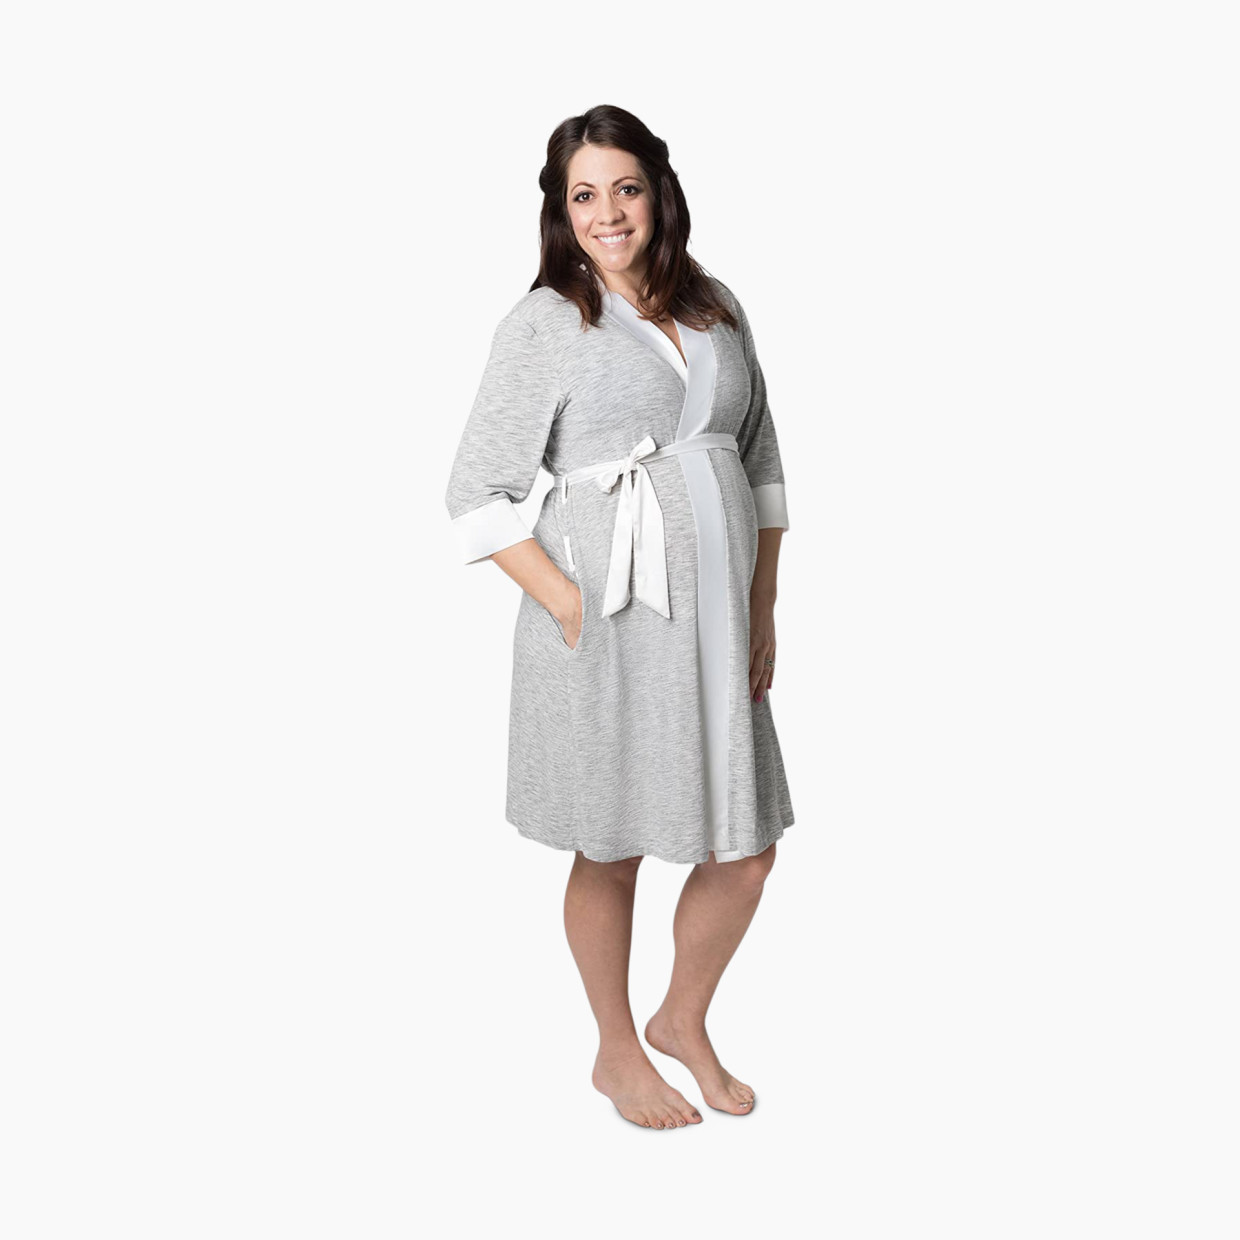 Kindred Bravely Emmaline Maternity & Nursing Robe - Grey, Small/Medium